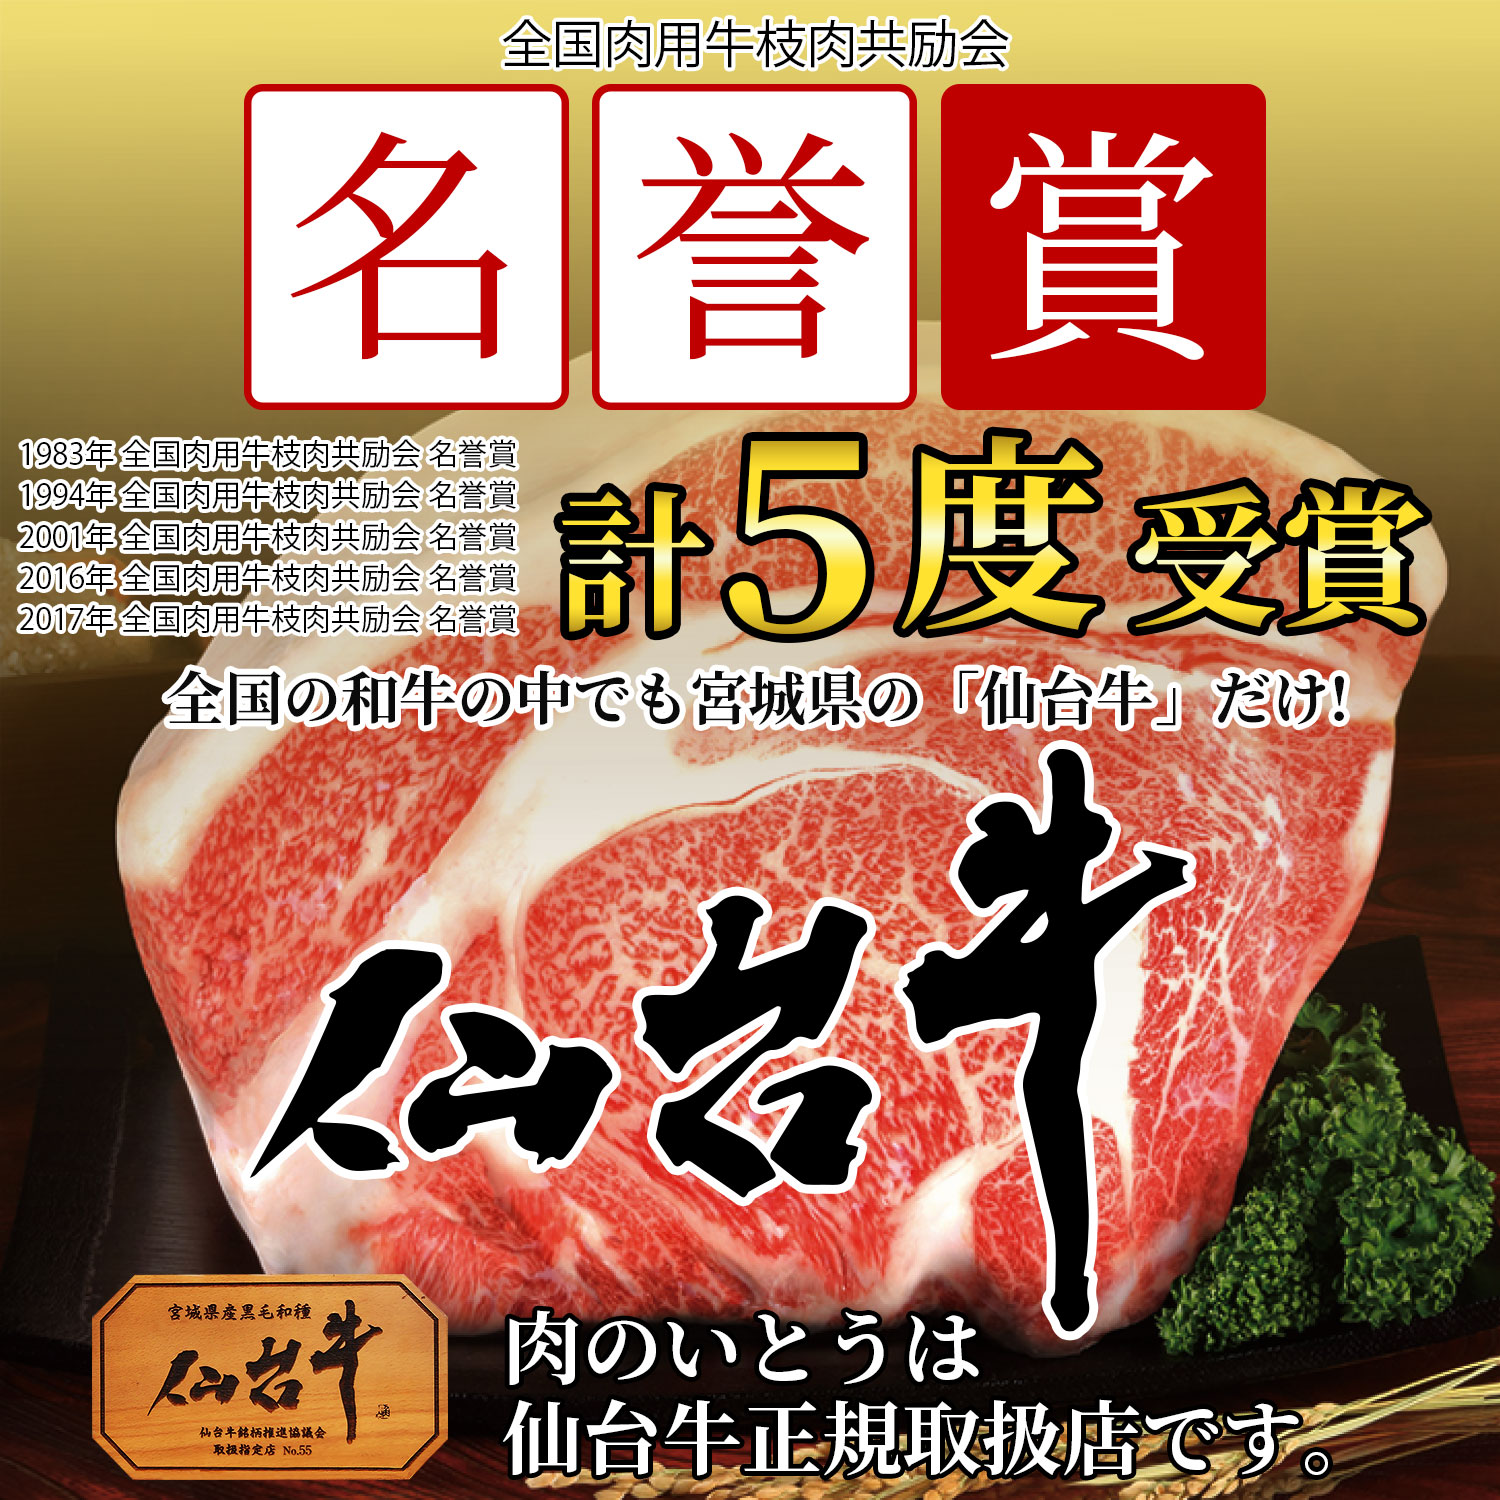 【平成29年度】全国肉用牛枝肉共励会 名誉賞受賞